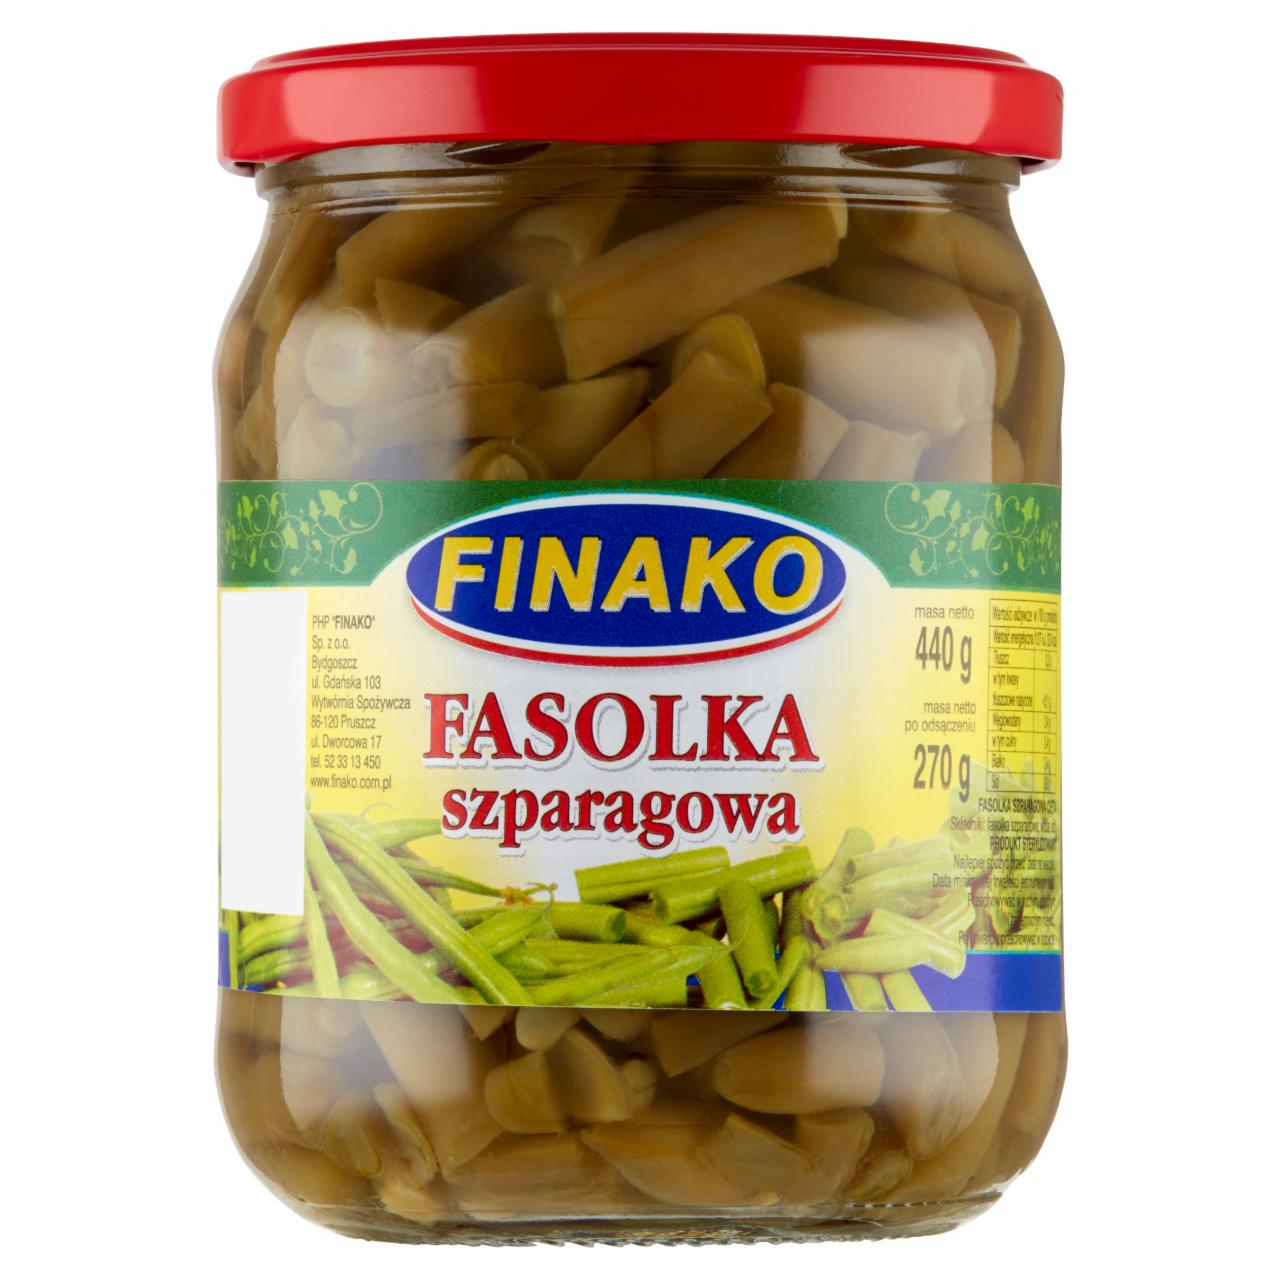 Zdjęcia - Finako Fasolka szparagowa 440 g